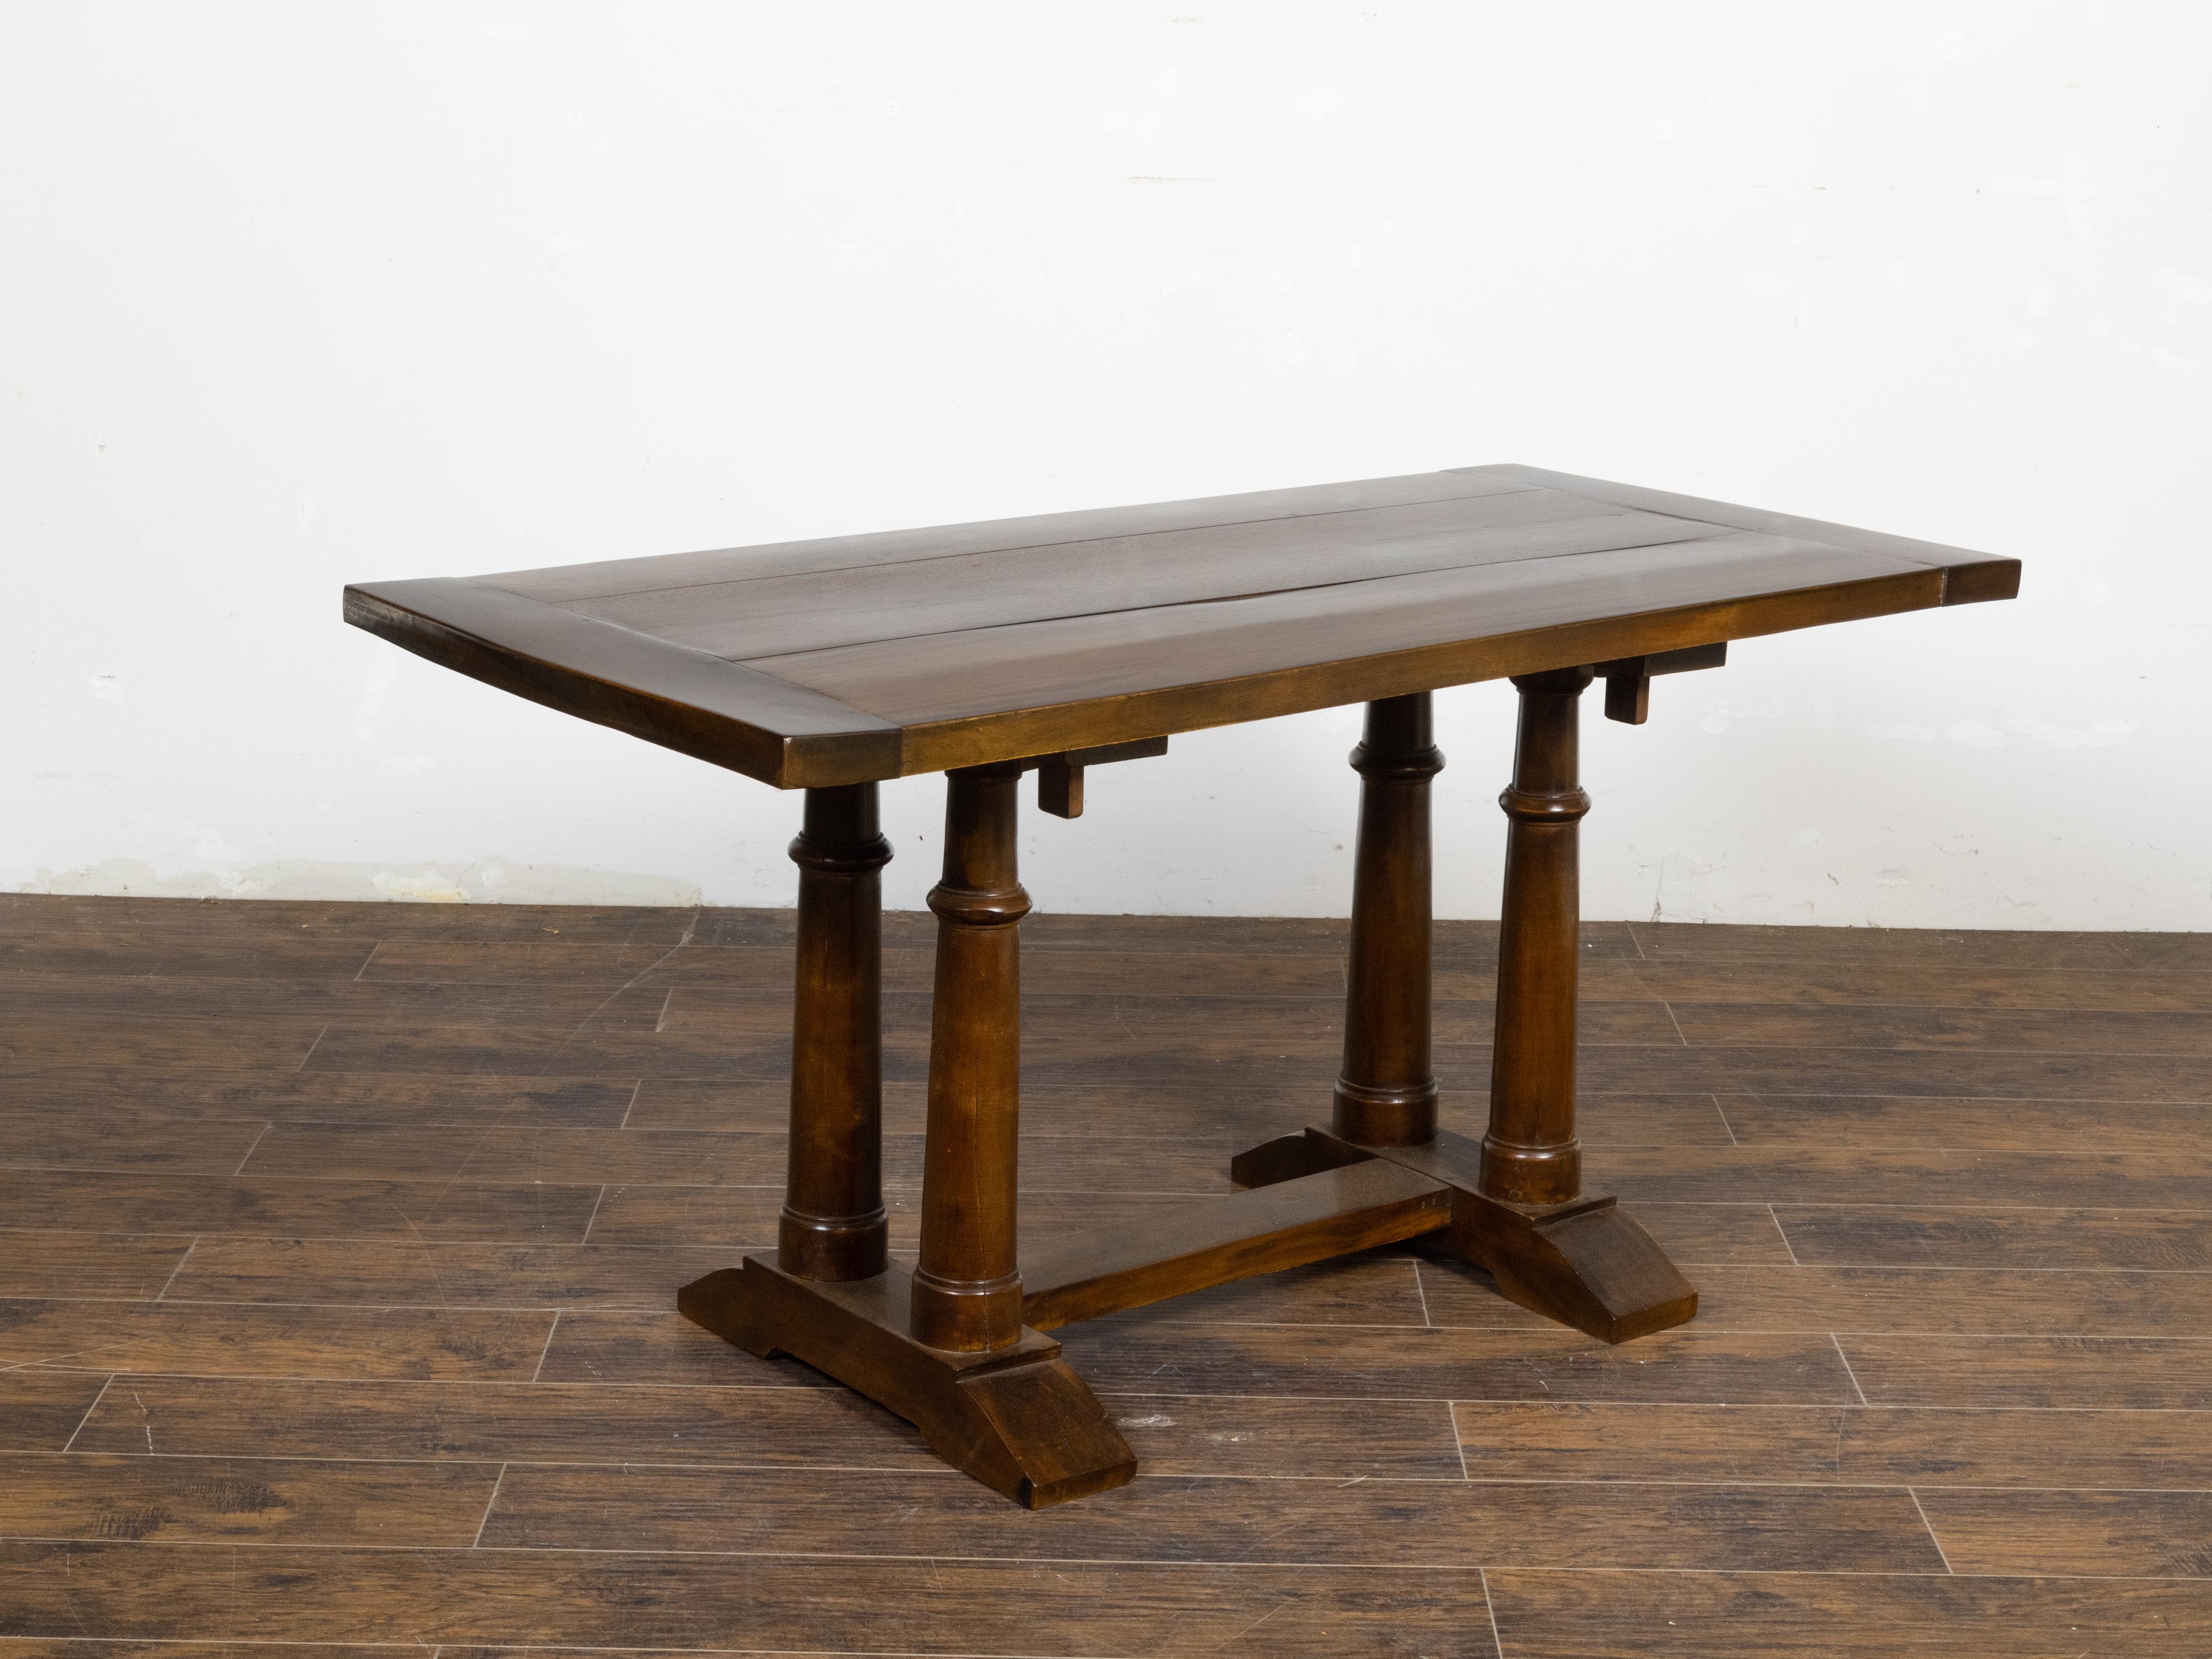 Une table à tréteaux en noyer italien du 19ème siècle, avec des pieds en forme de colonne. Créée en Italie au XIXe siècle, cette table en noyer présente un plateau rectangulaire en planches et des planches plus foncées sur les côtés, au-dessus d'une